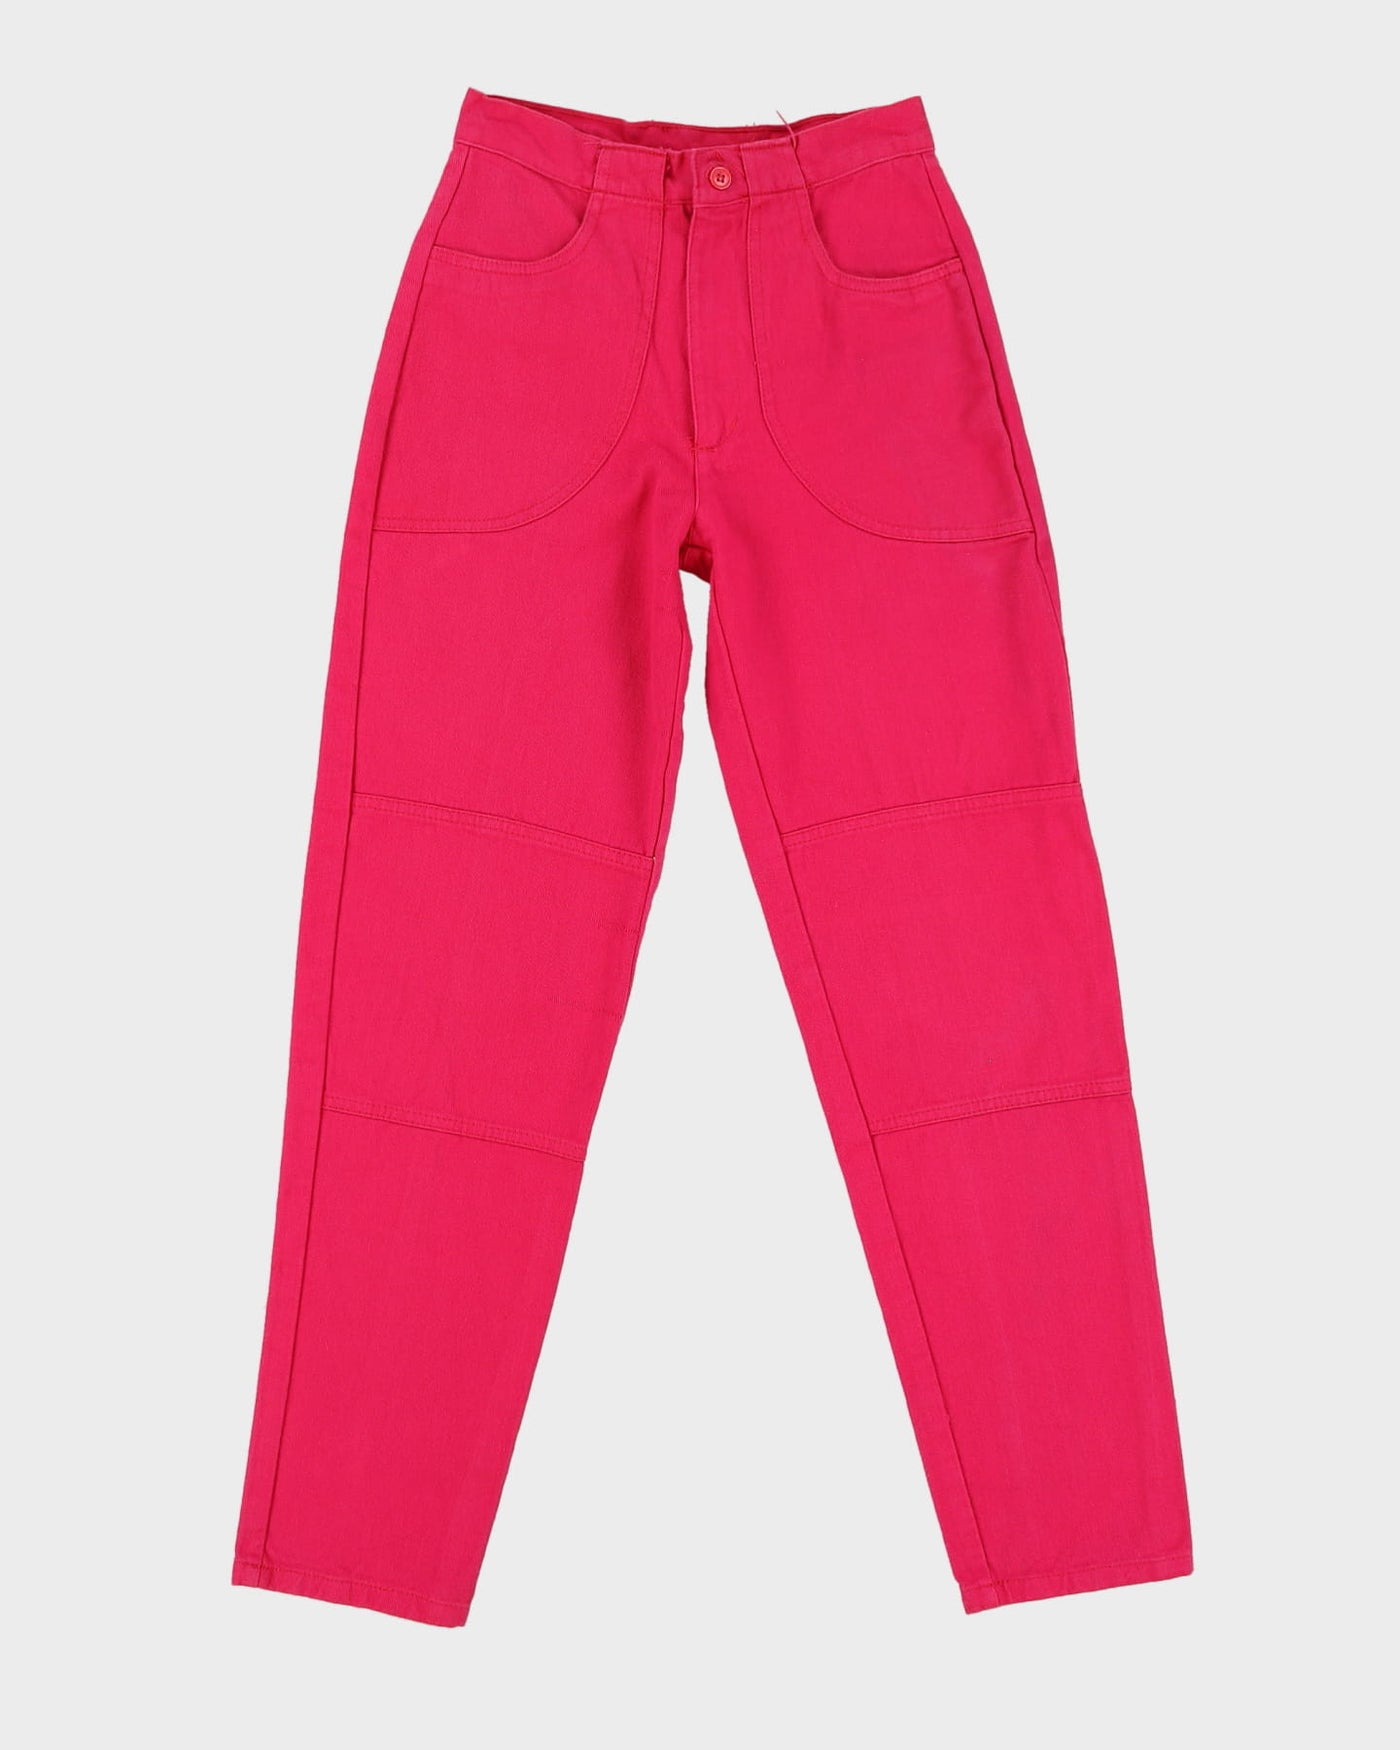 Vintage 1990s Pink Cotton Jeans - XS